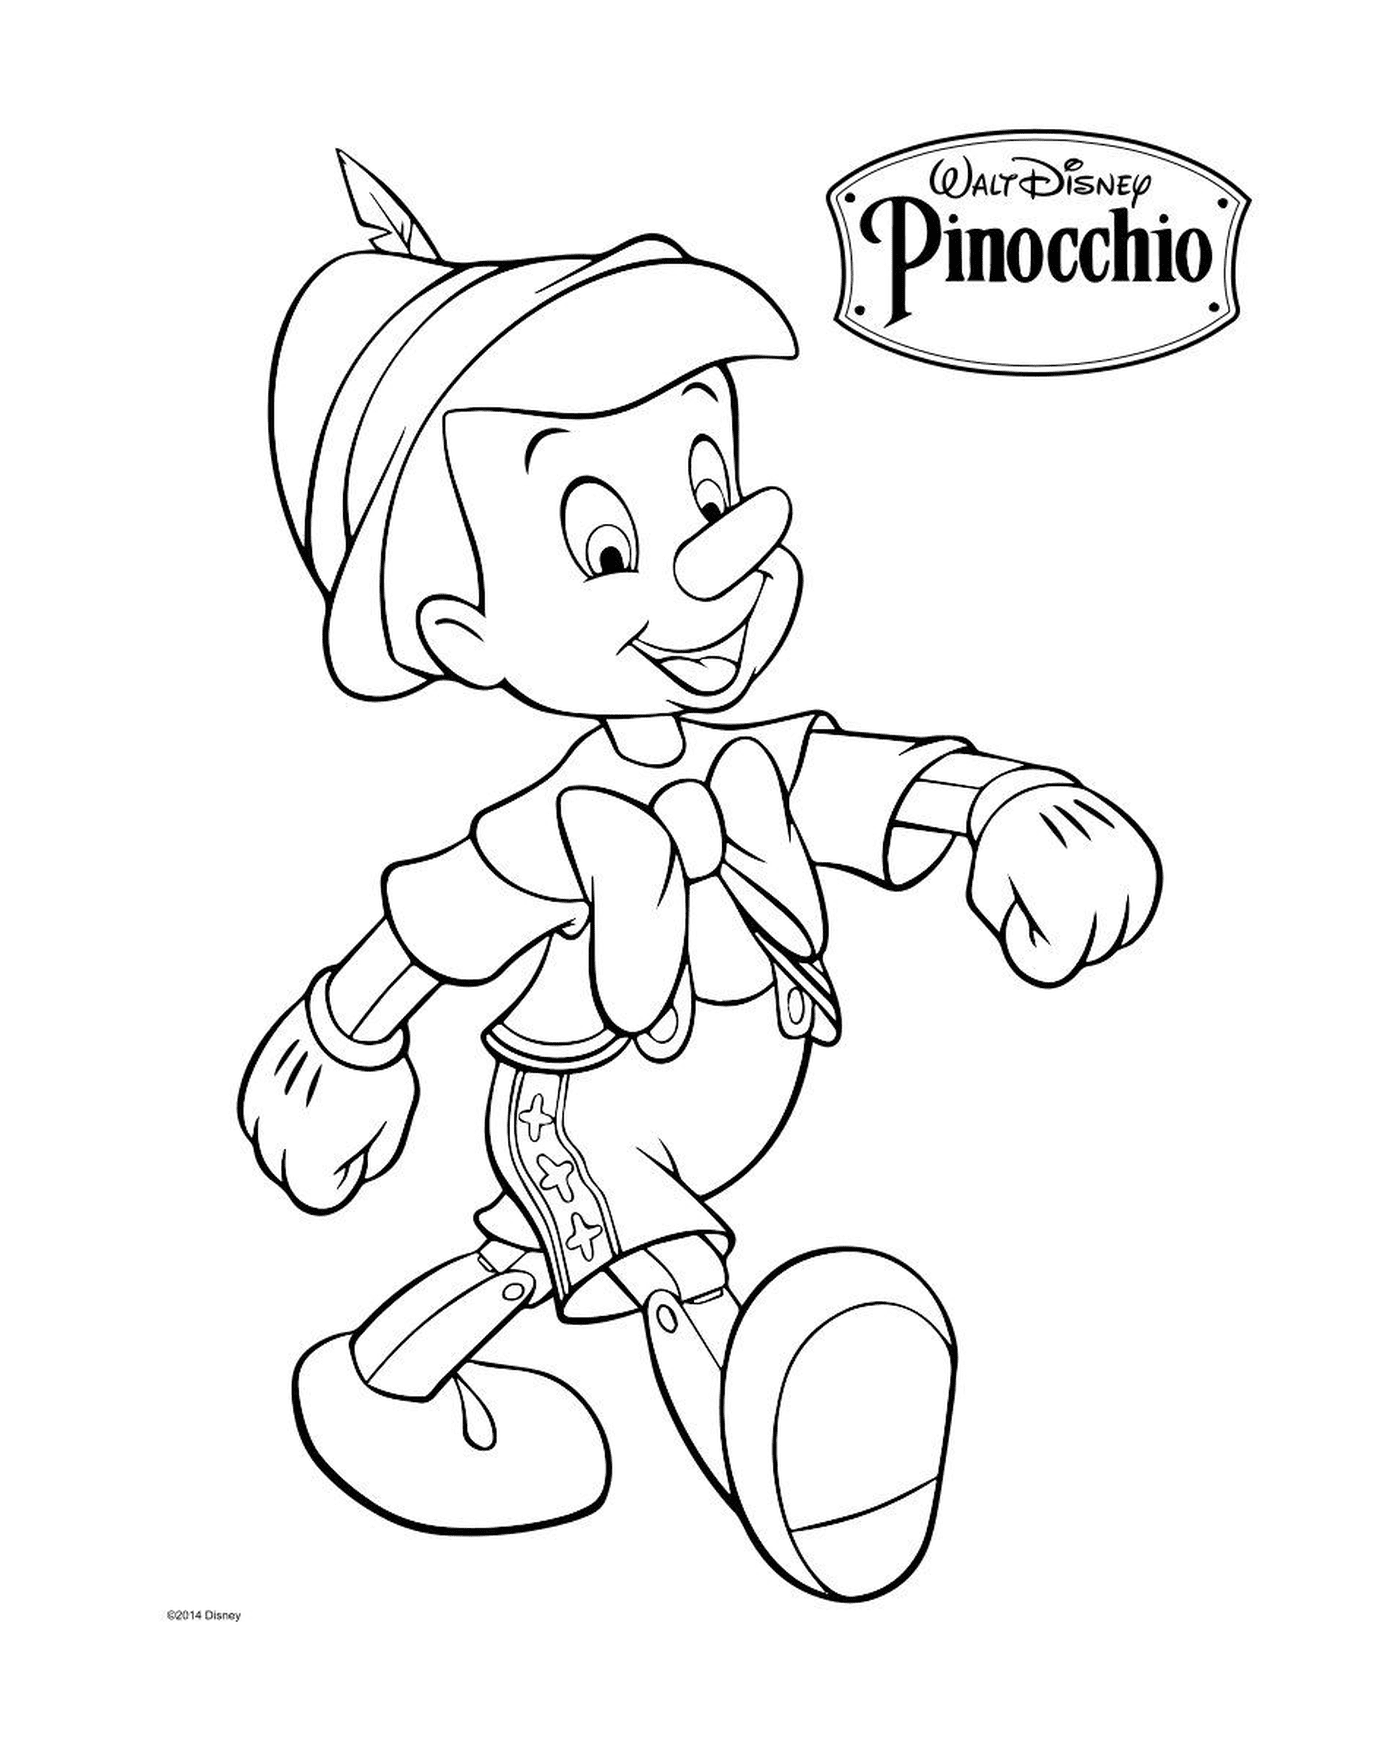  Geppetto, um carpinteiro italiano, fabrica um fantoche Pinóquio 